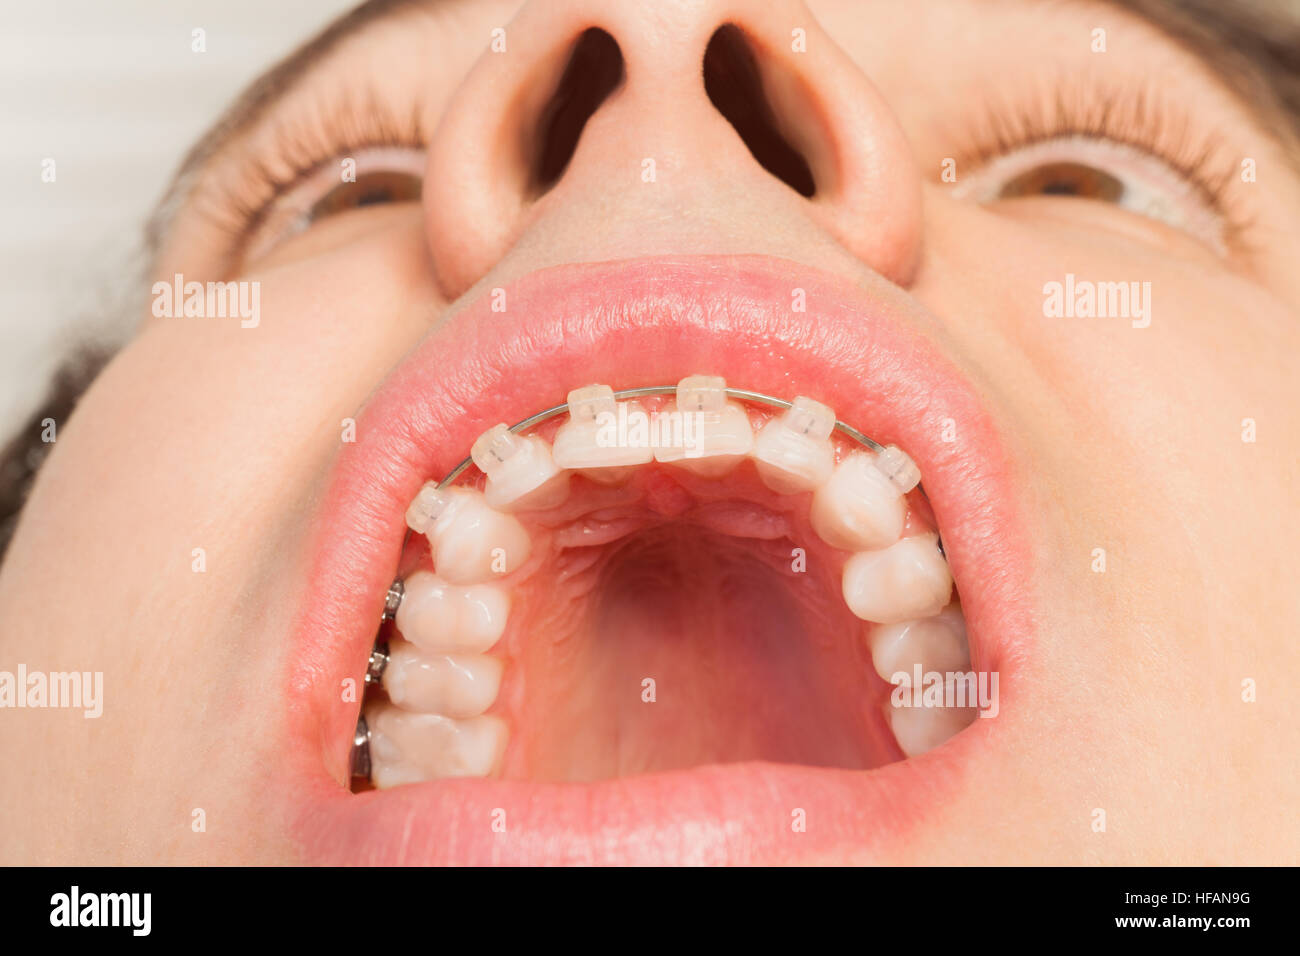 Открытая полость рта. Здоровая ротовая полость.